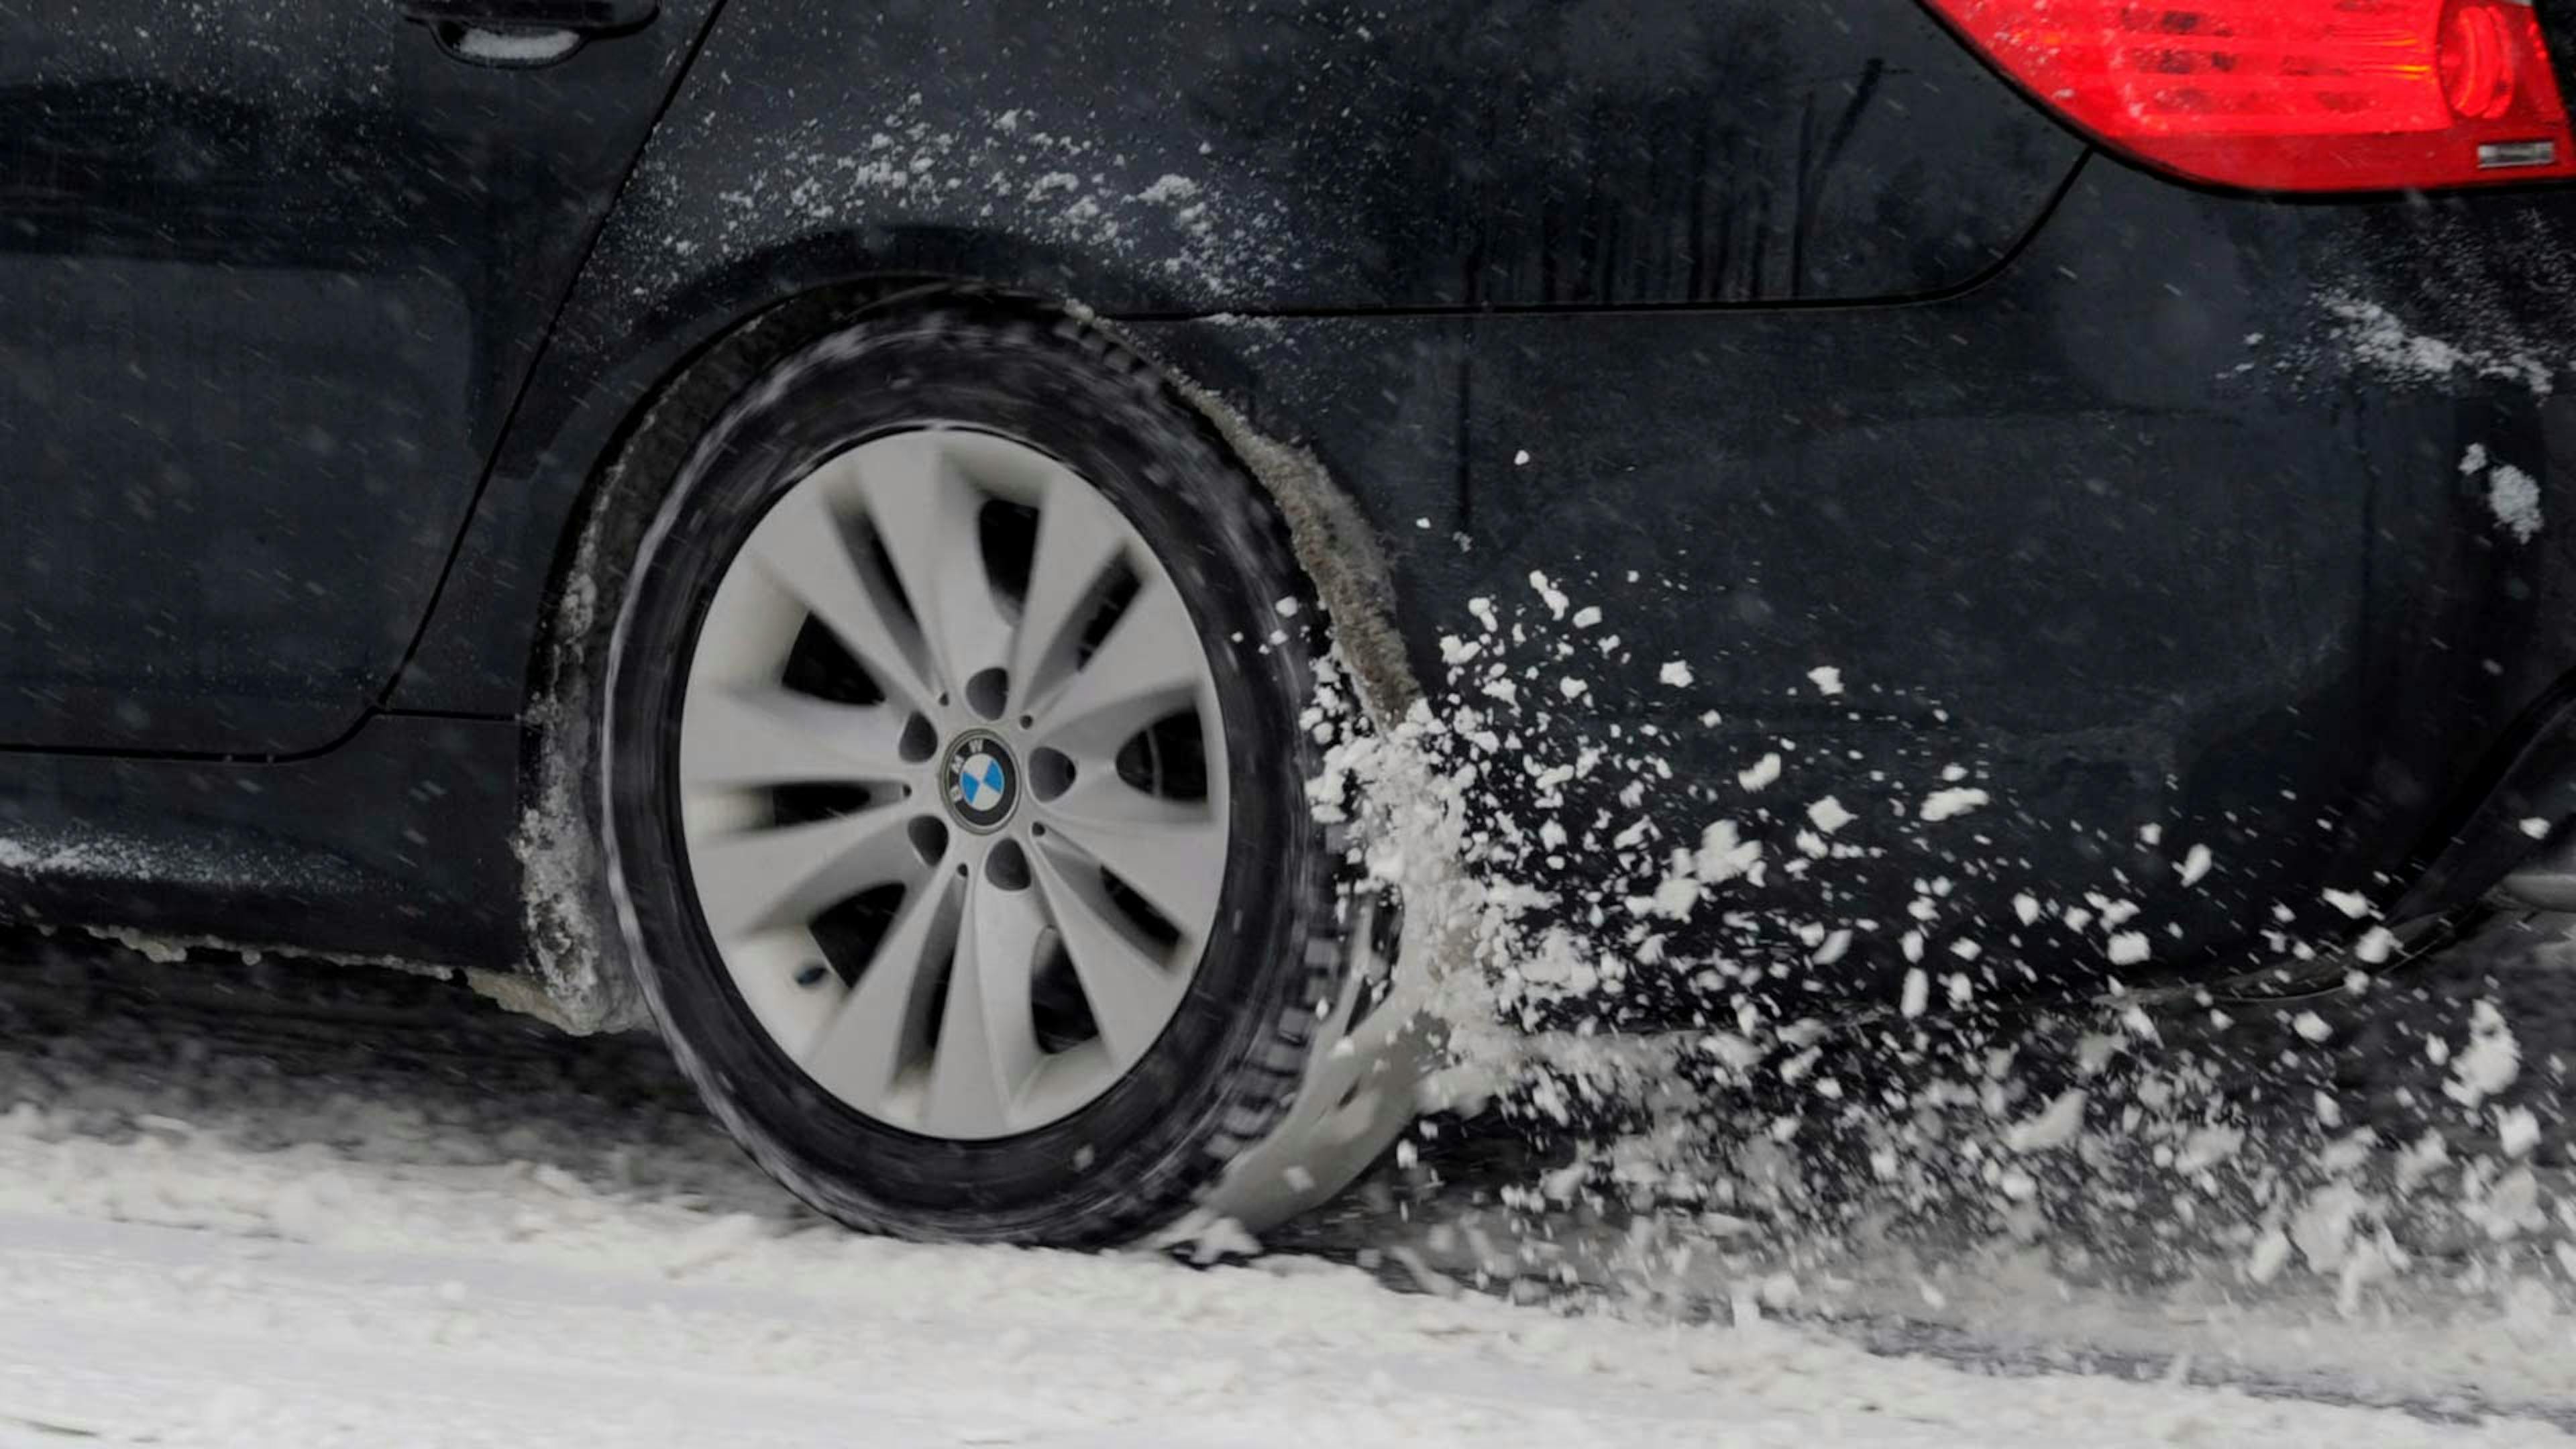 Der Reifen eines BMW mit Heckantrieb dreht auf einer schneebedeckten Straße durch.